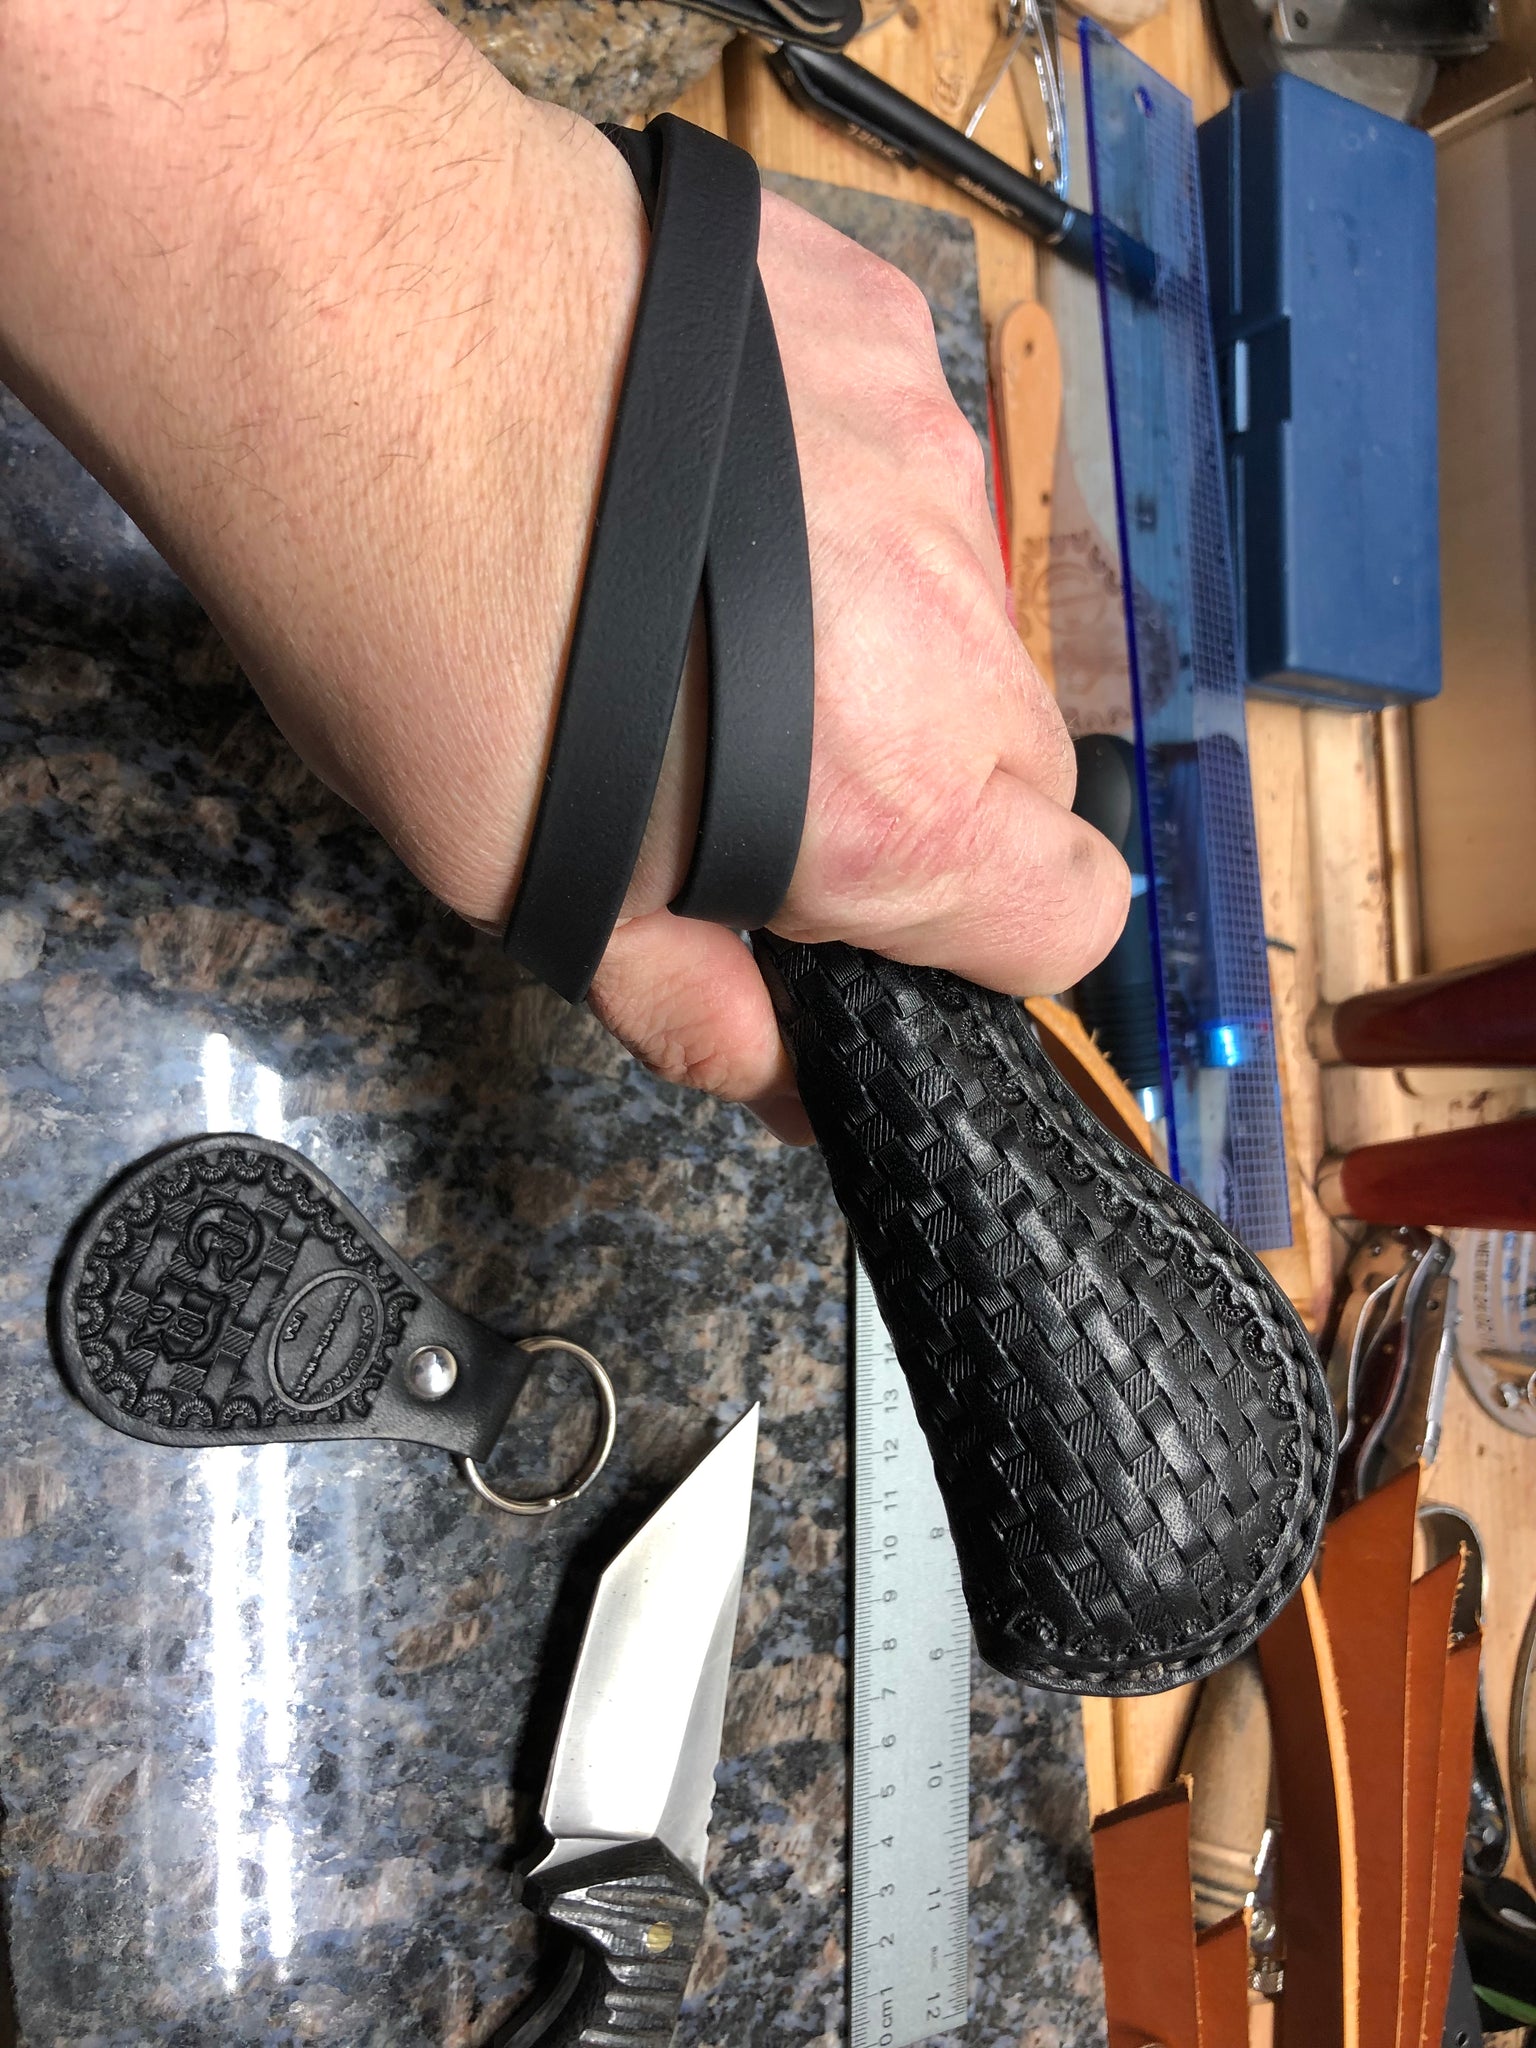 Safeguard: Pocket Hammer (8 In. Sap) 1800's Classic Jack Sap (BLACK) –